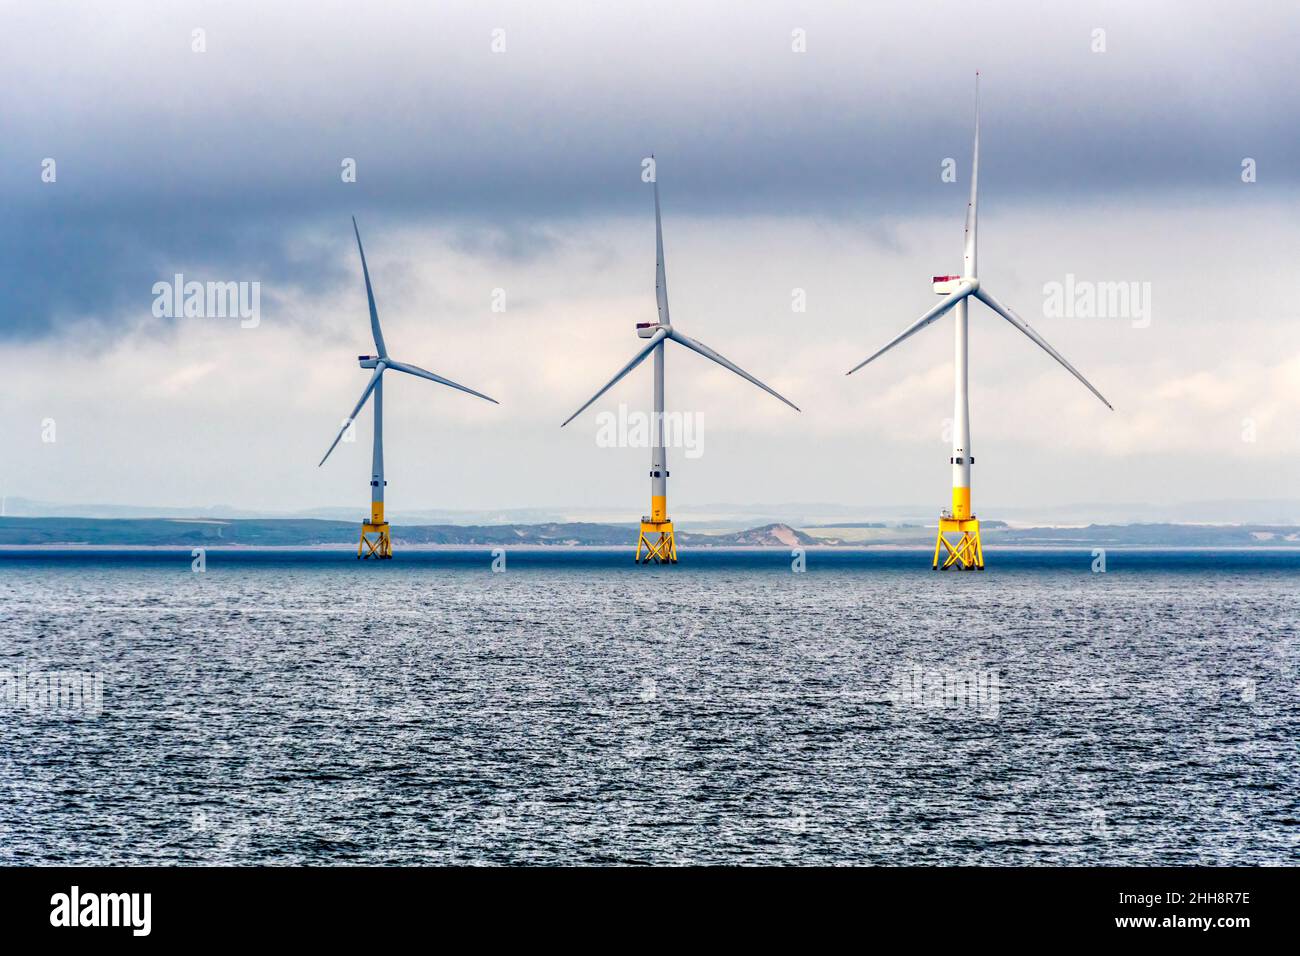 El European Offshore Wind Deployment Center o el Aberdeen Offshore Wind Farm son instalaciones de prueba y demostración de viento en alta mar frente a la costa escocesa de Aberdeen. Foto de stock